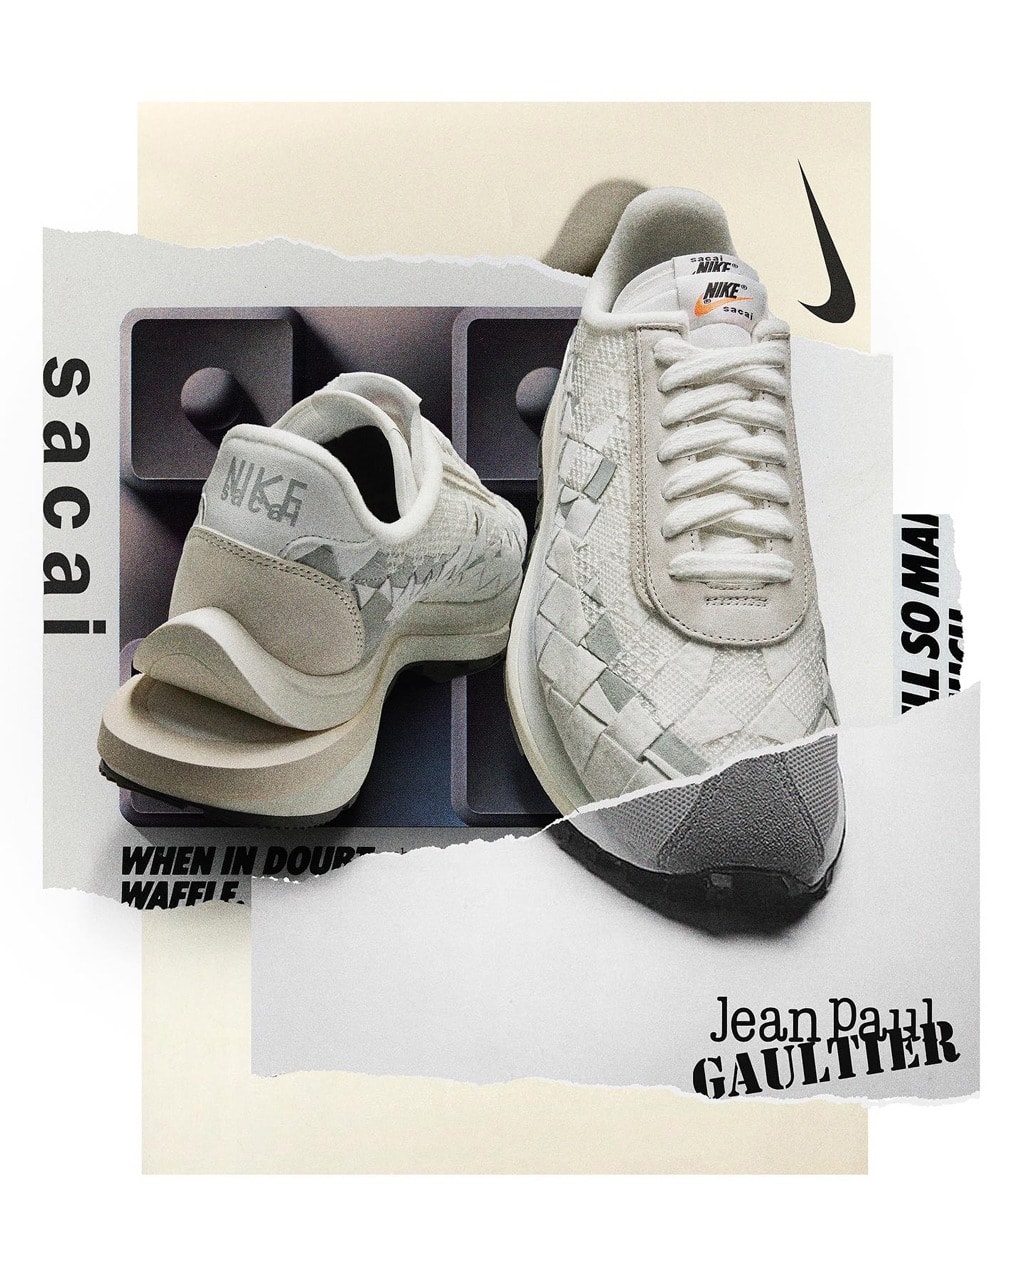 Jean Paul Gaultier x sacai x Nike 全新三方聯名鞋款正式登場